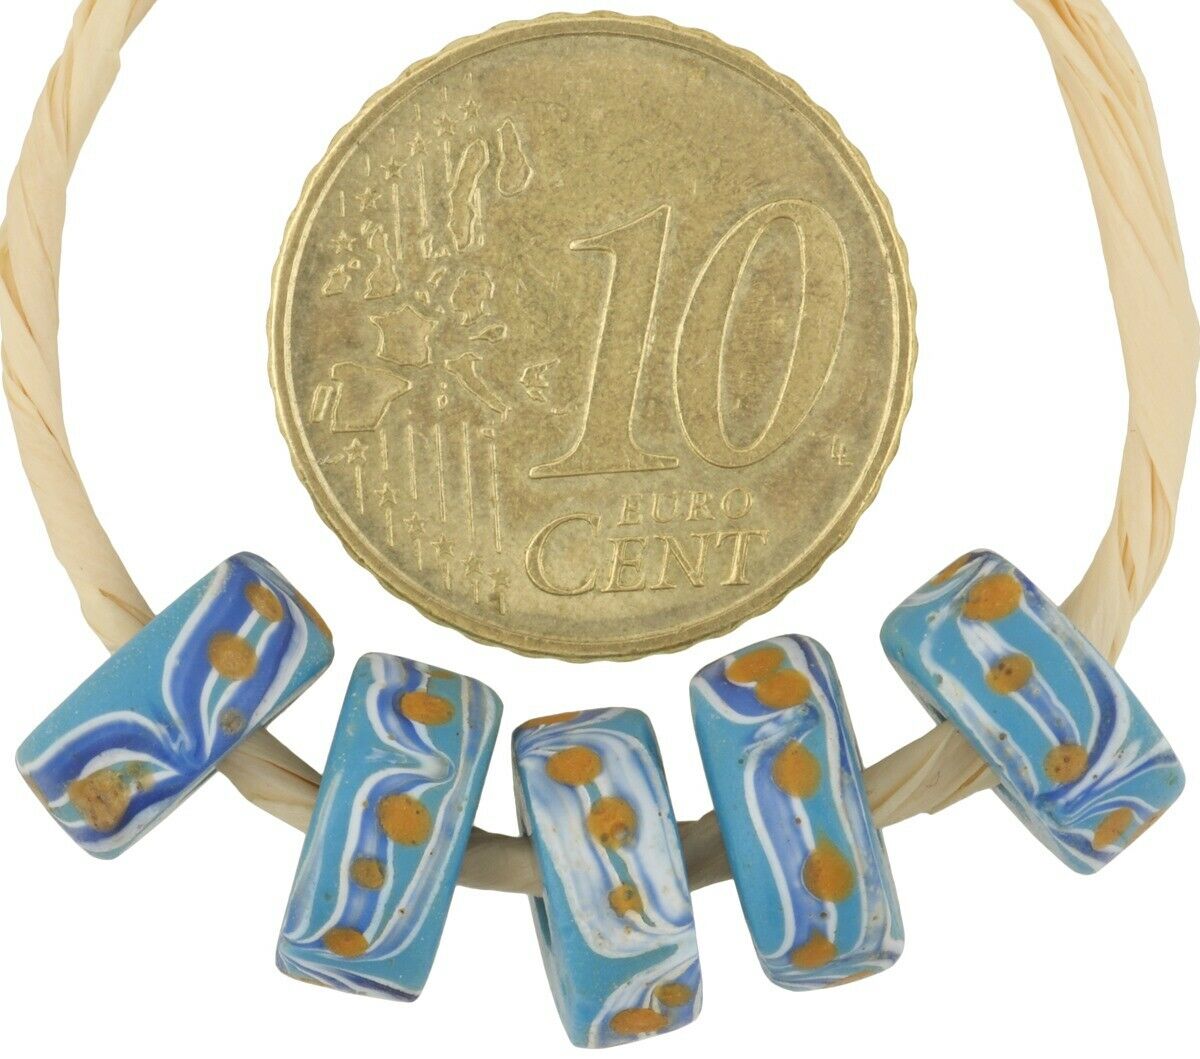 Cuentas de vidrio venecianas antiguas, antiguo comercio africano, discos de fantasía, azul murano raro - Tribalgh